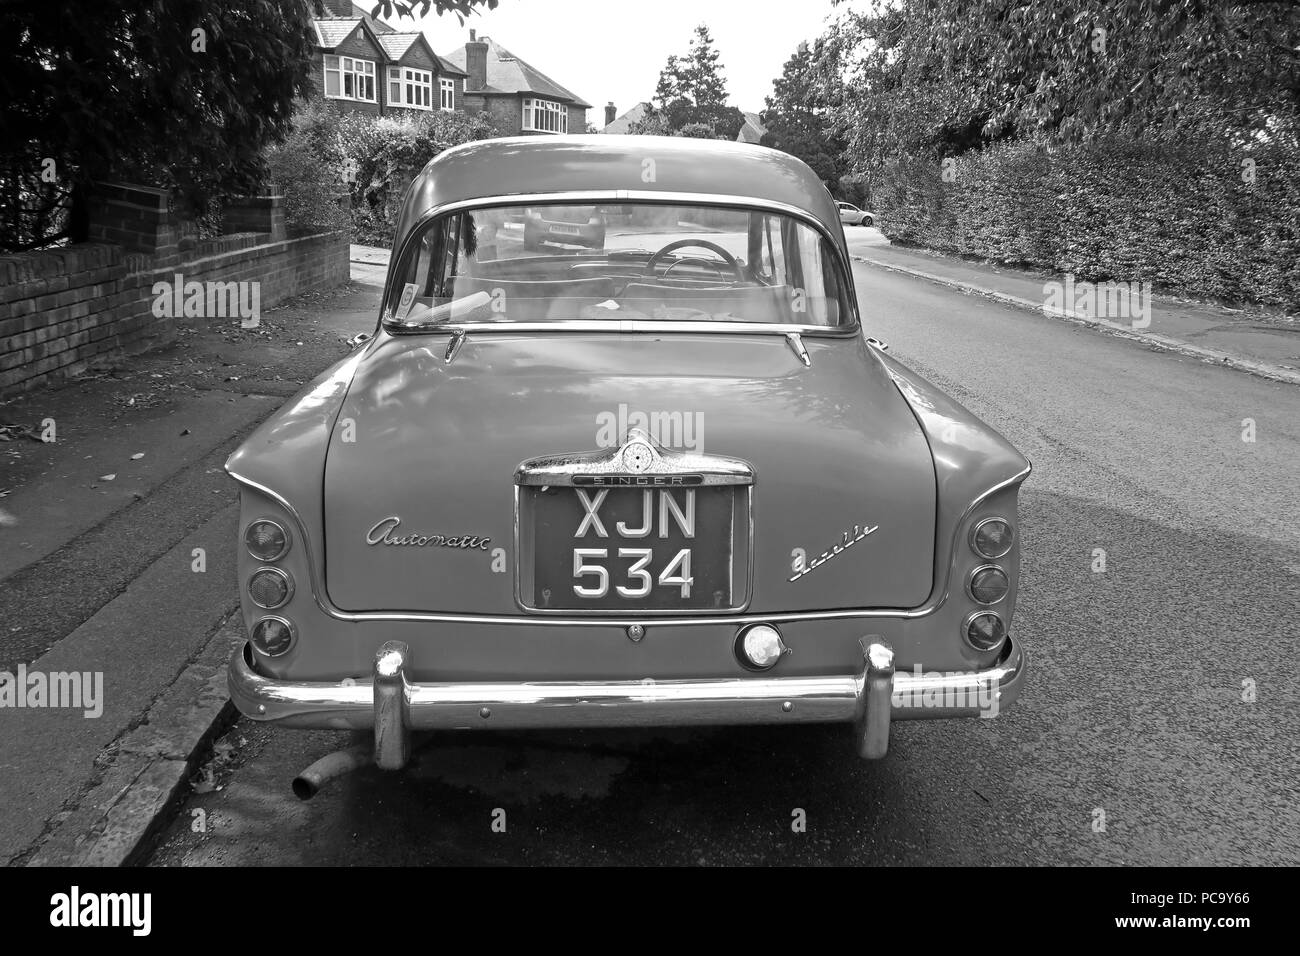 Singer Gazelle voiture classique, bleu, XJN534, dans la rue, Stockton Heath, Warrington, Cheshire, North West England, UK Banque D'Images